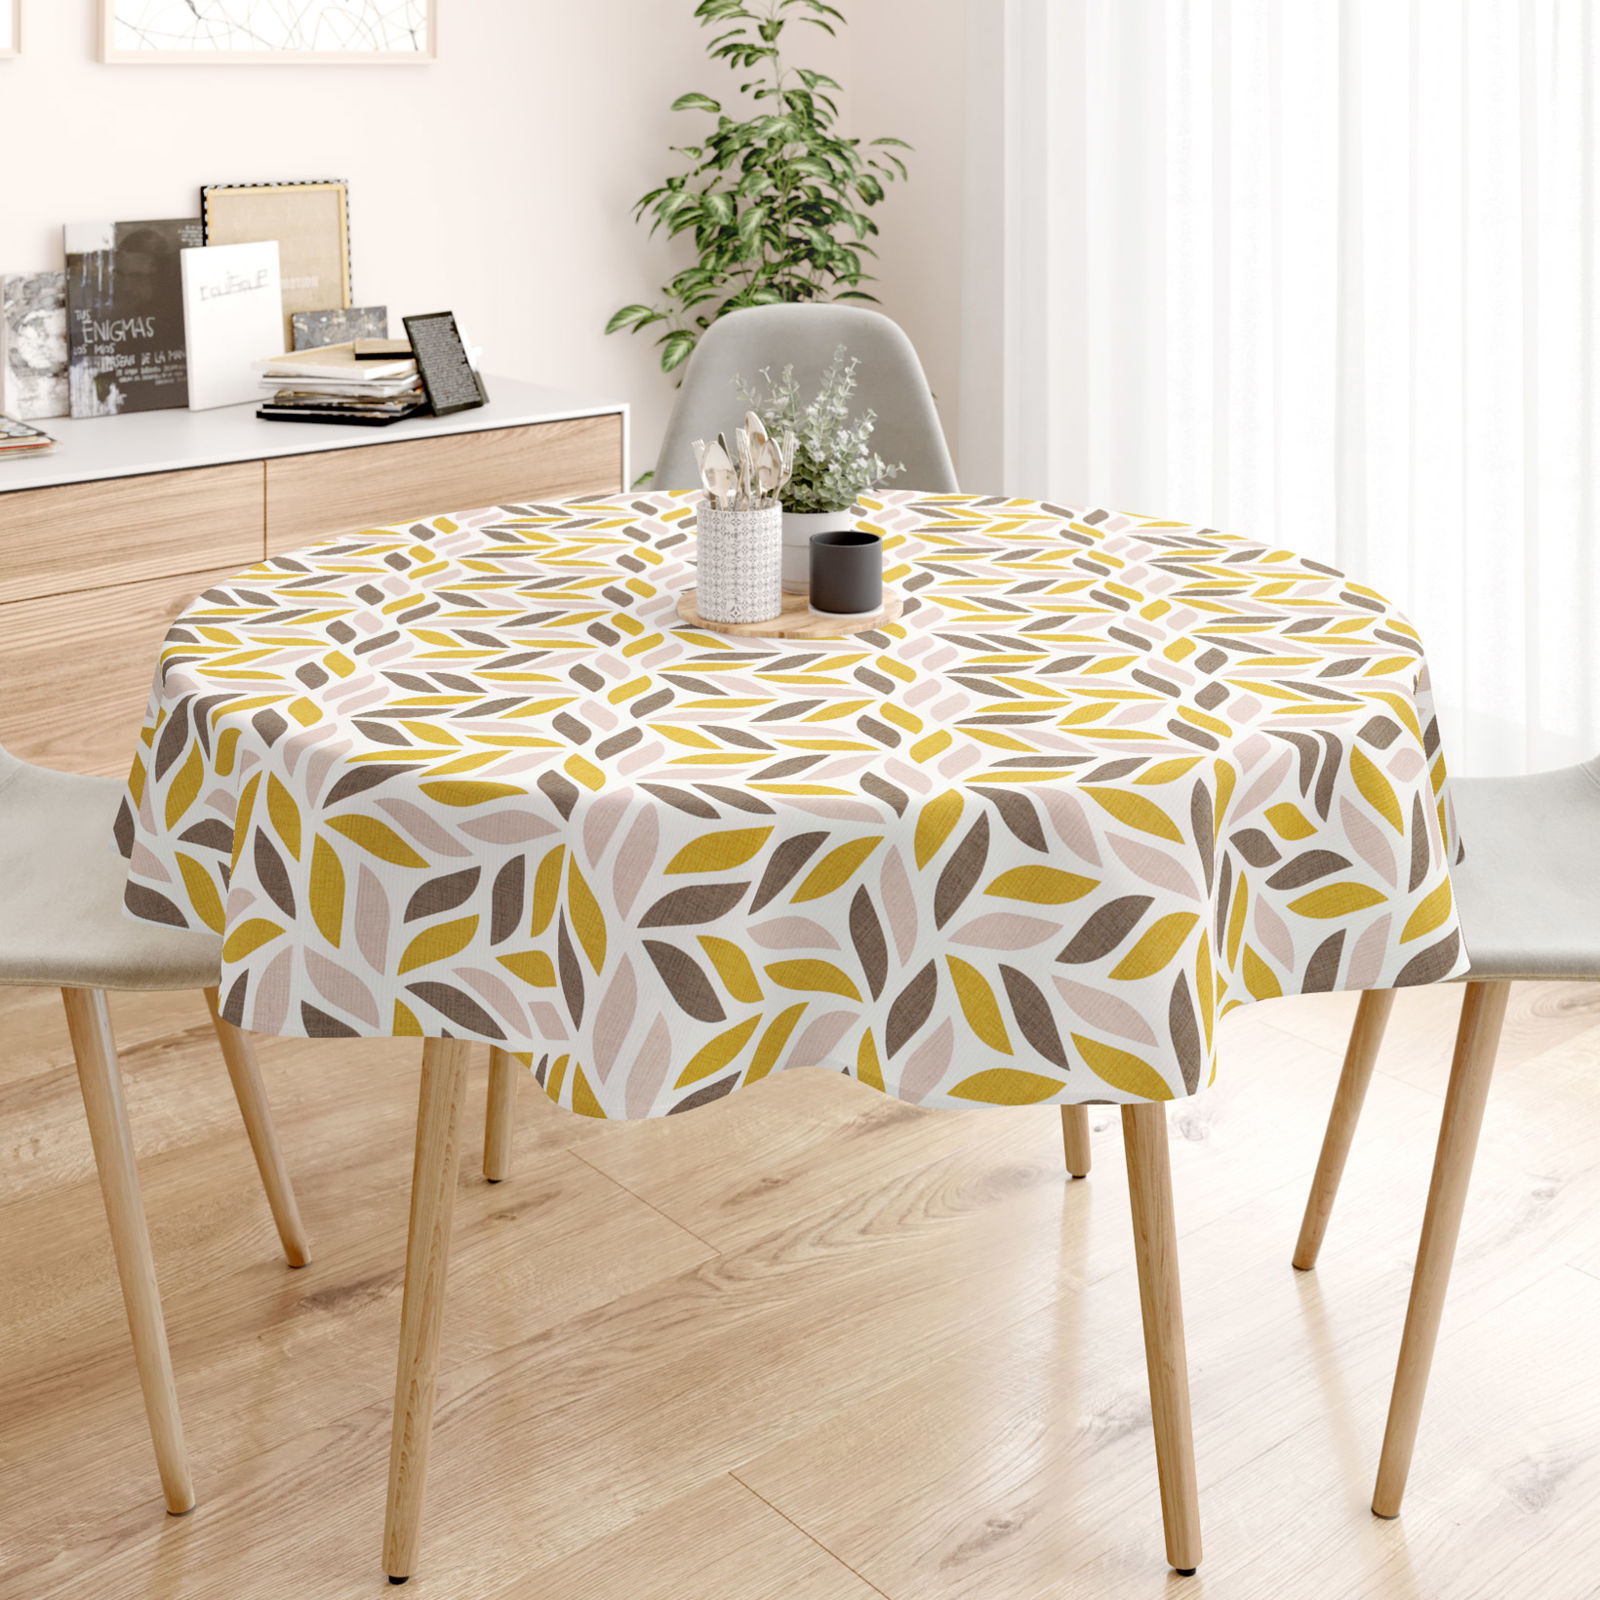 LONETA dekoratív asztalterítő - barna és aranyszínű levelek - kör alakú